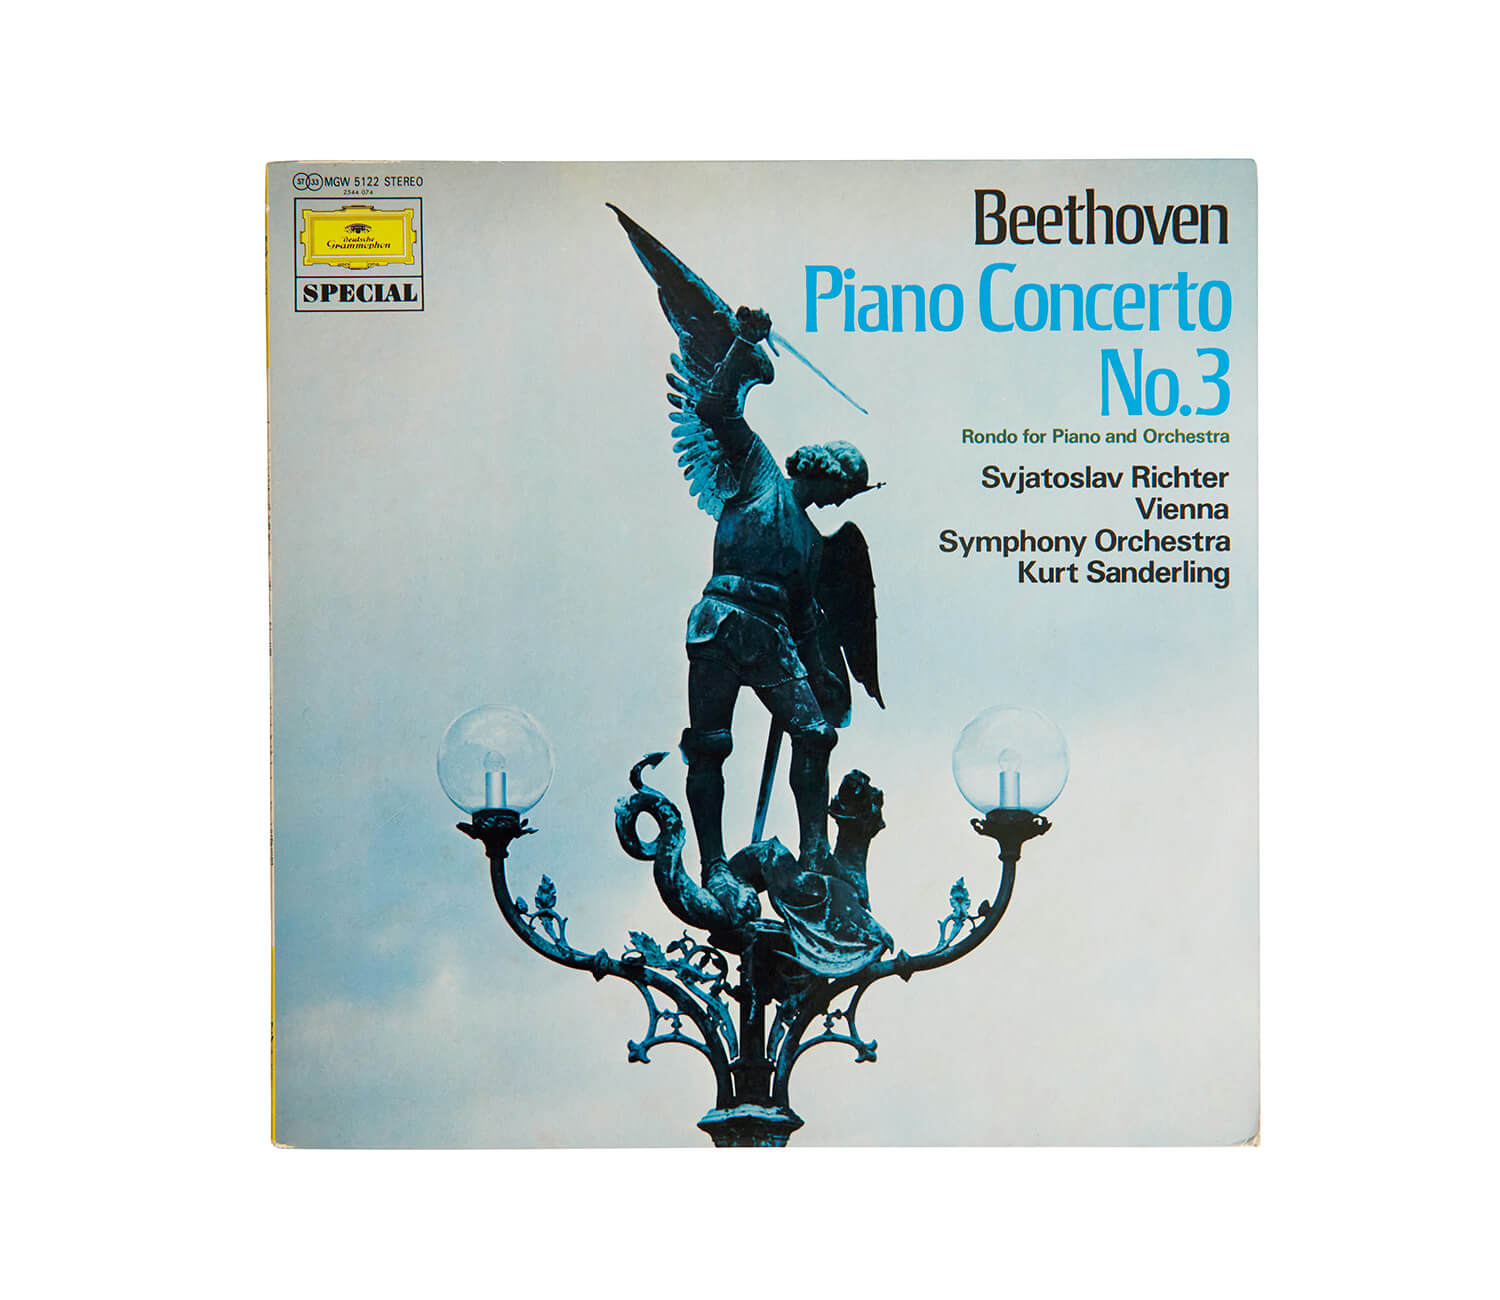 スヴャトスラフ・リヒテルが演奏した、ベートーヴェン「ピアノ協奏曲第3番 ハ短調」レコードジャケット